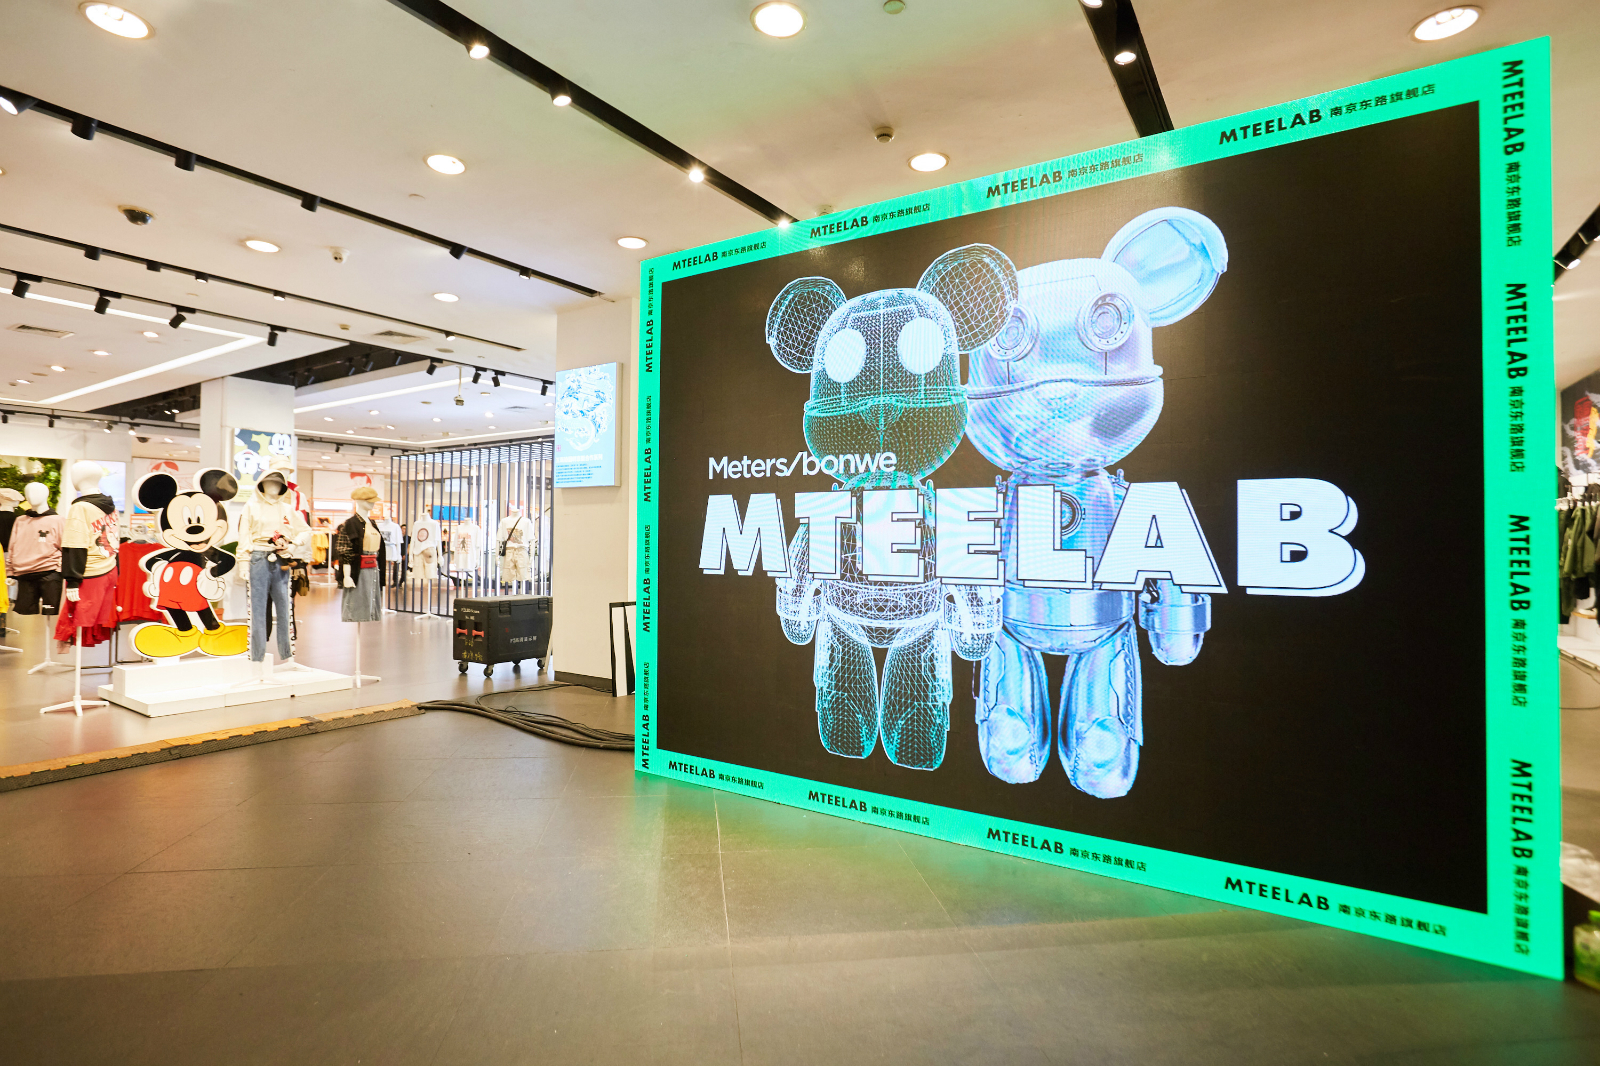 美特斯邦威于上海旗舰店开启潮流实验室 MTEE LAB